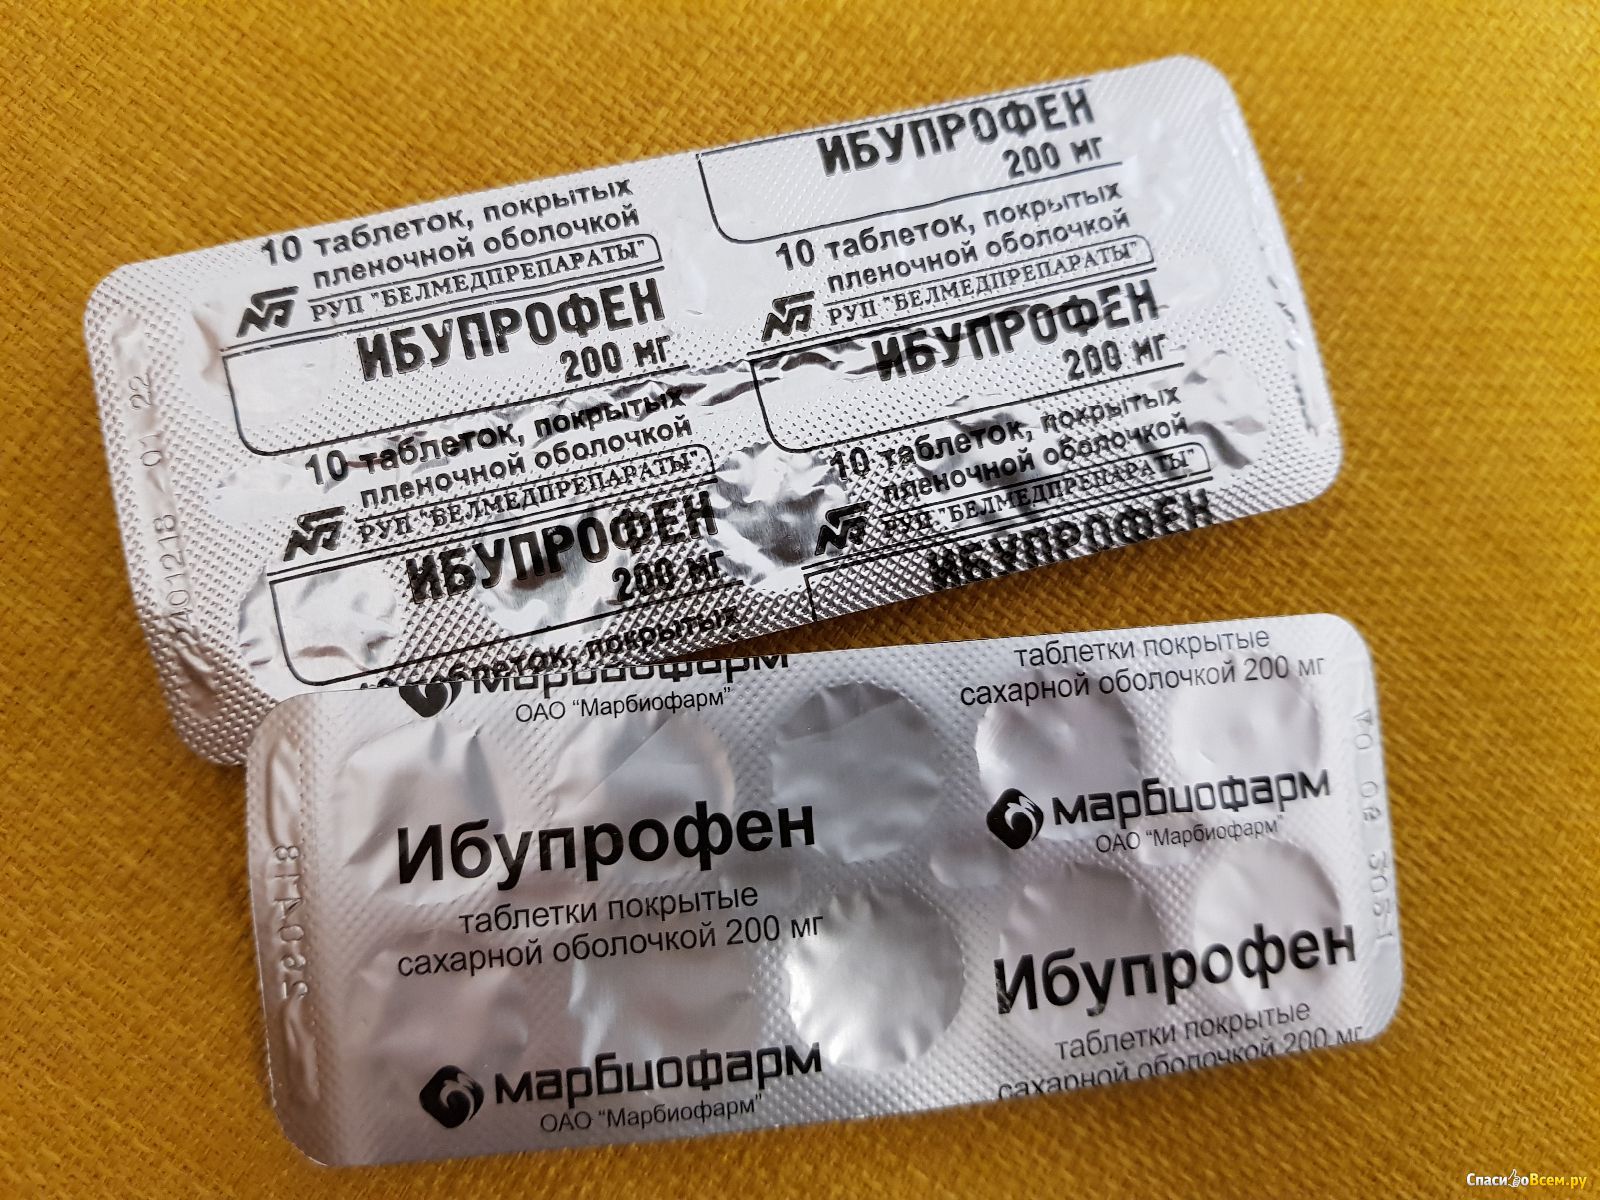 Ибупрофен лучший производитель. Ибупрофен желтые таблетки. Аналог ибупрофена в таблетках. Ибупрофен как выглядит капсула. Ибупрофен белые круглые таблетки.